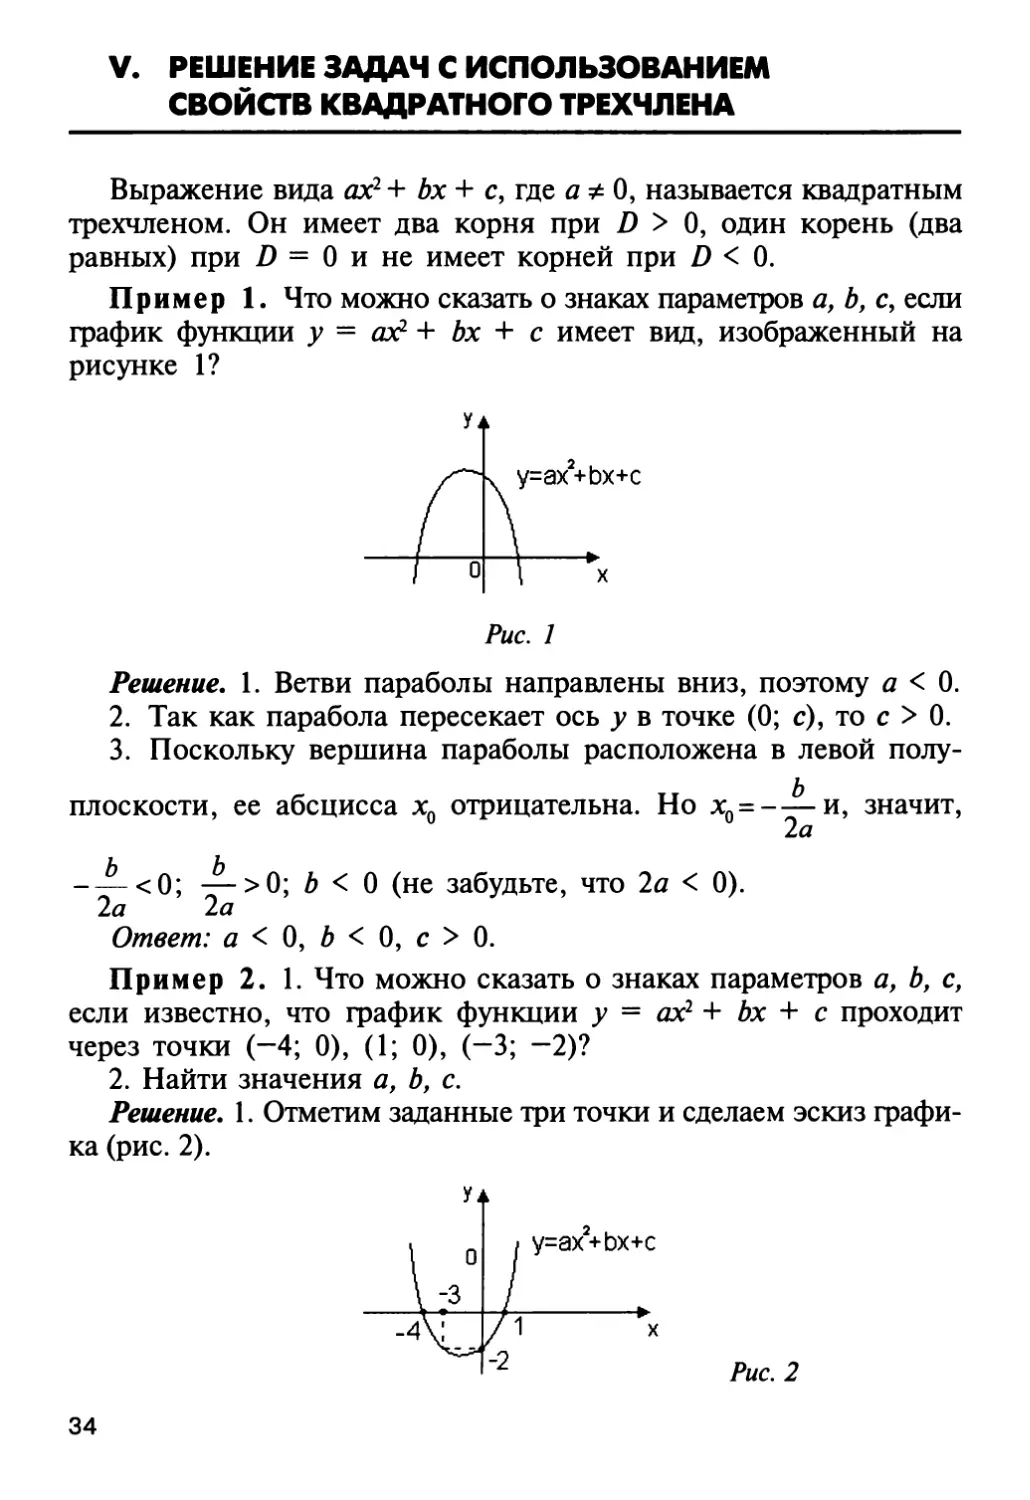 V. Решение задач с использованием свойств квадратного трехчлена